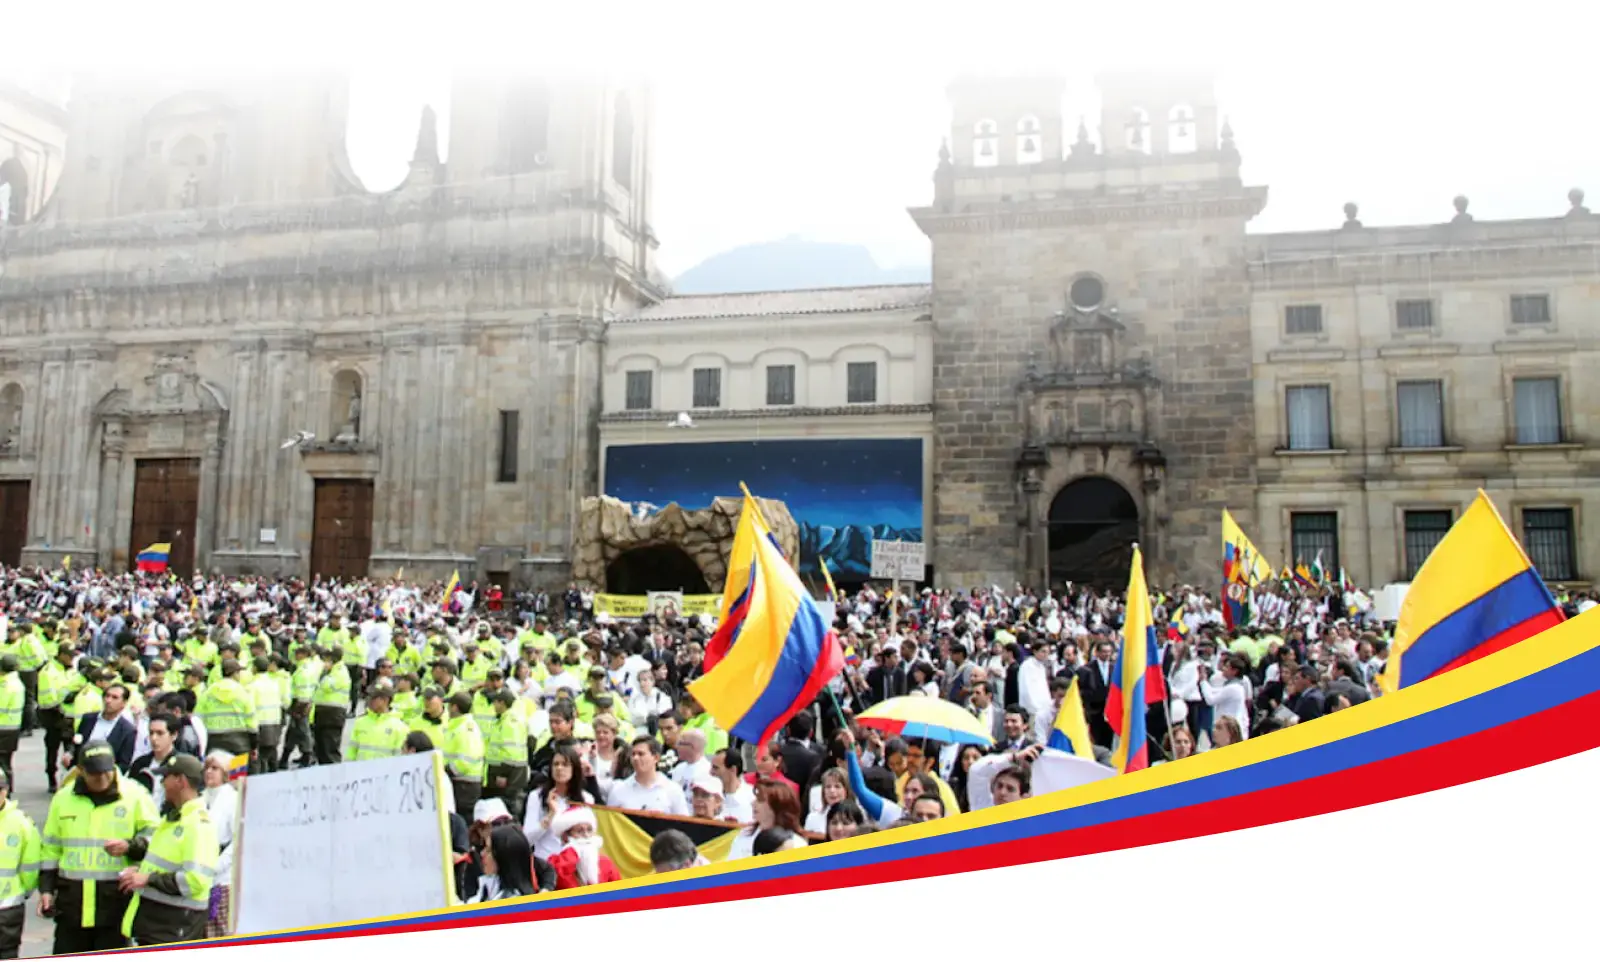 Uma grande reunião de pessoas na Colômbia, muitas delas segurando a bandeira colombiana, em frente a um importante edifício federal, possivelmente uma catedral ou estrutura governamental, com policiais em primeiro plano.